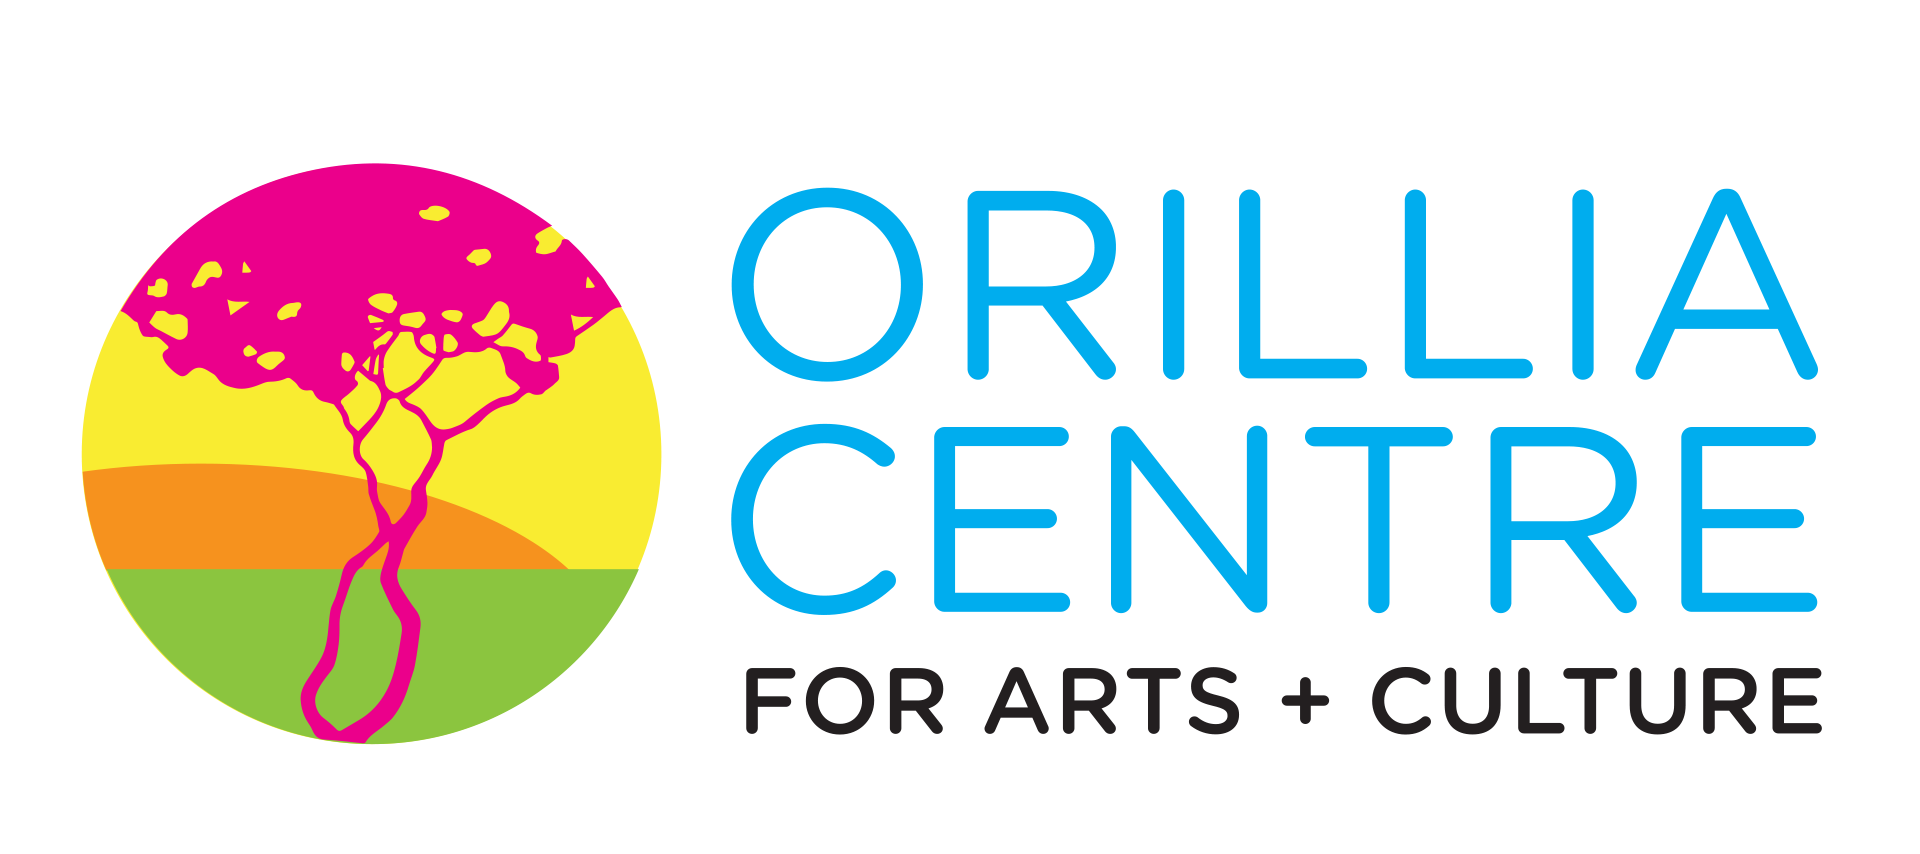 ORILLIA CENTRE FOR ARTS & CULTURE